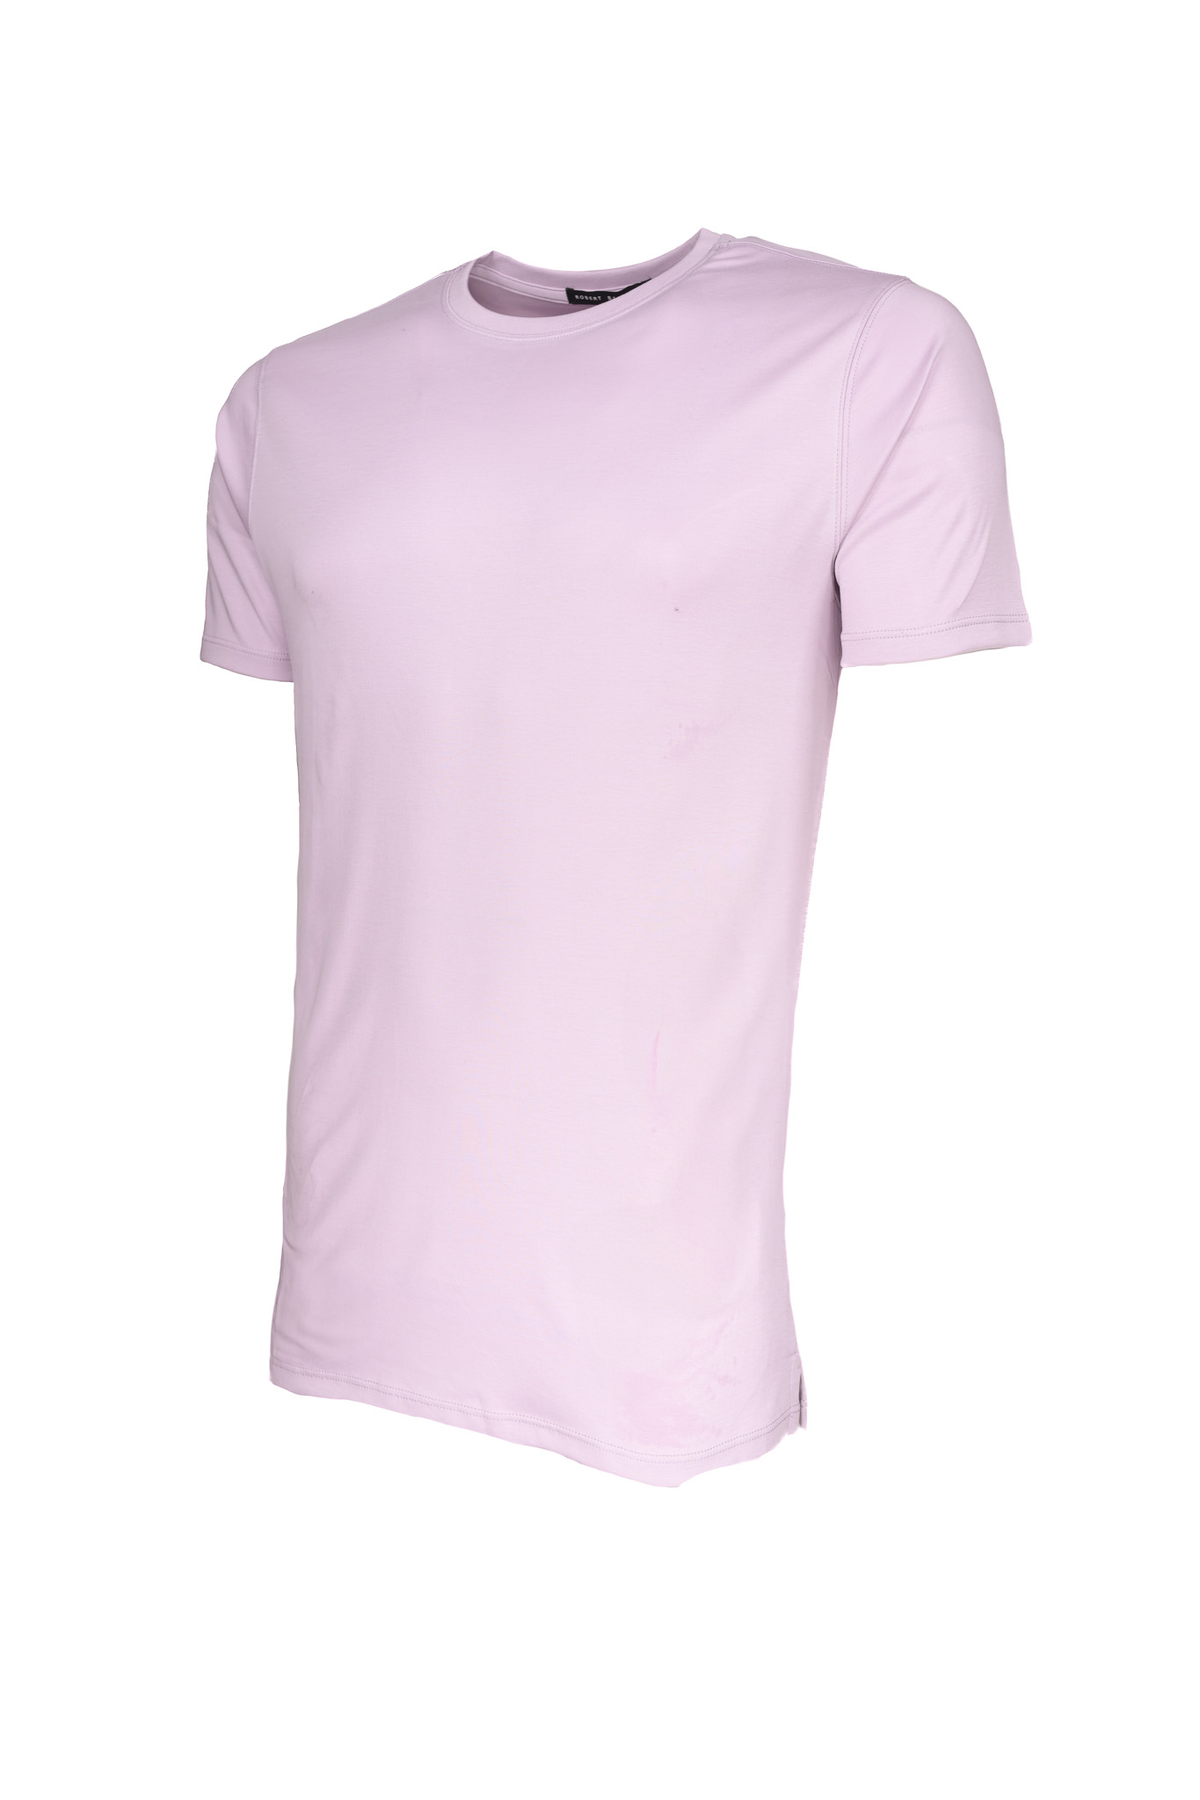 Robert Barakett T-Shirt Light Pink